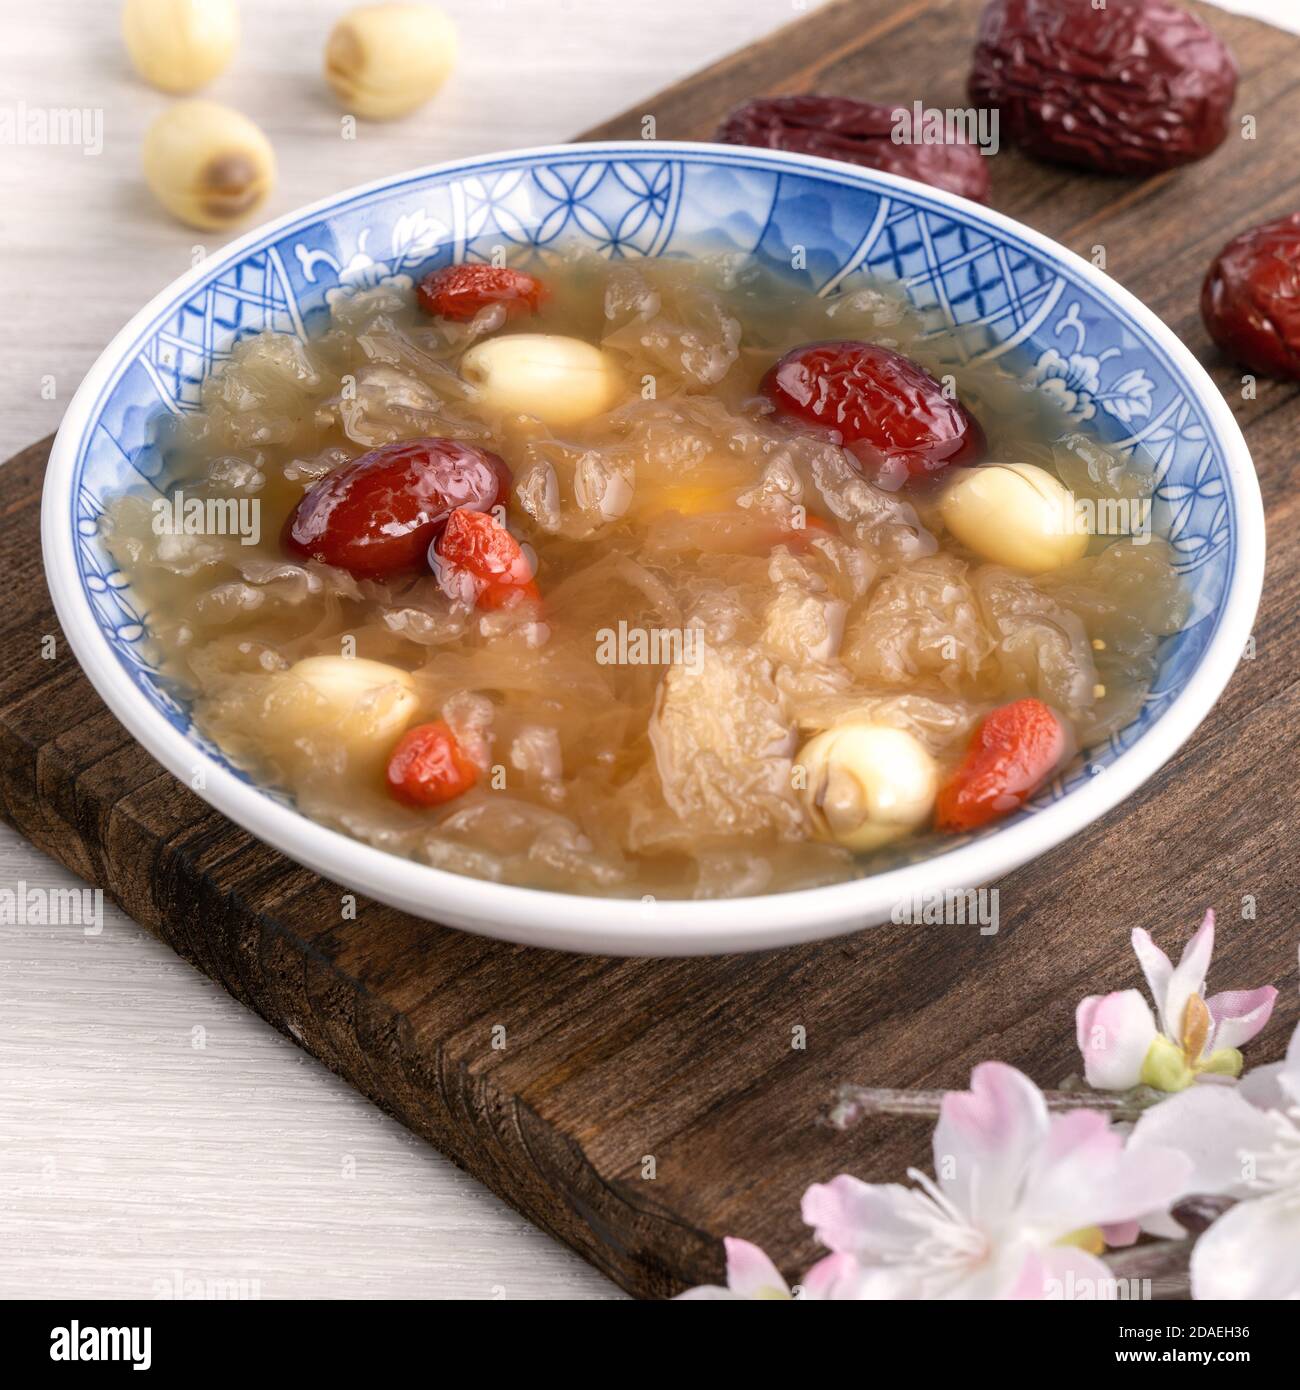 Gros plan de la soupe traditionnelle chinoise douce aux champignons blancs avec graines de lotus, dattes rouges (jujujube) et baies de carcajou (baie de goji, baie de gogyberry) sur le dos blanc Banque D'Images